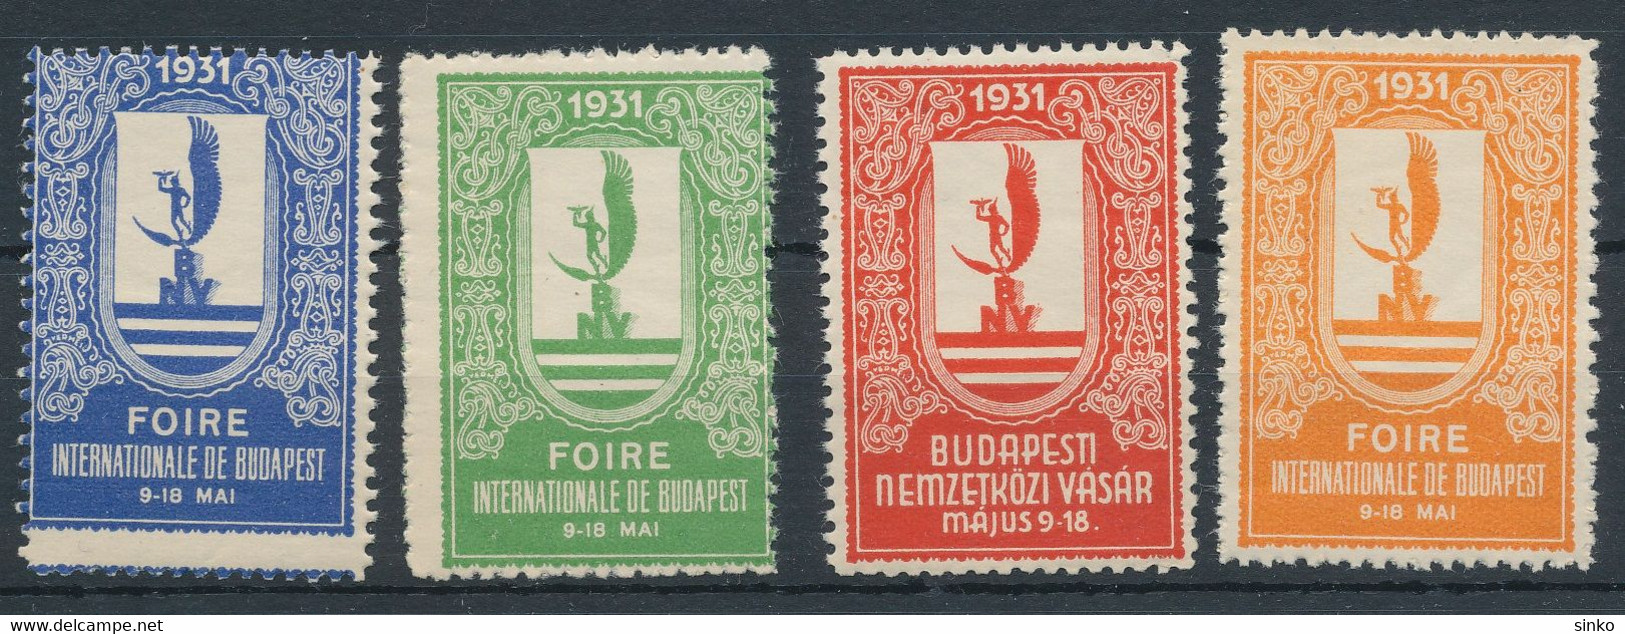 1931. Budapest International Fair - Cinderella - Feuillets Souvenir